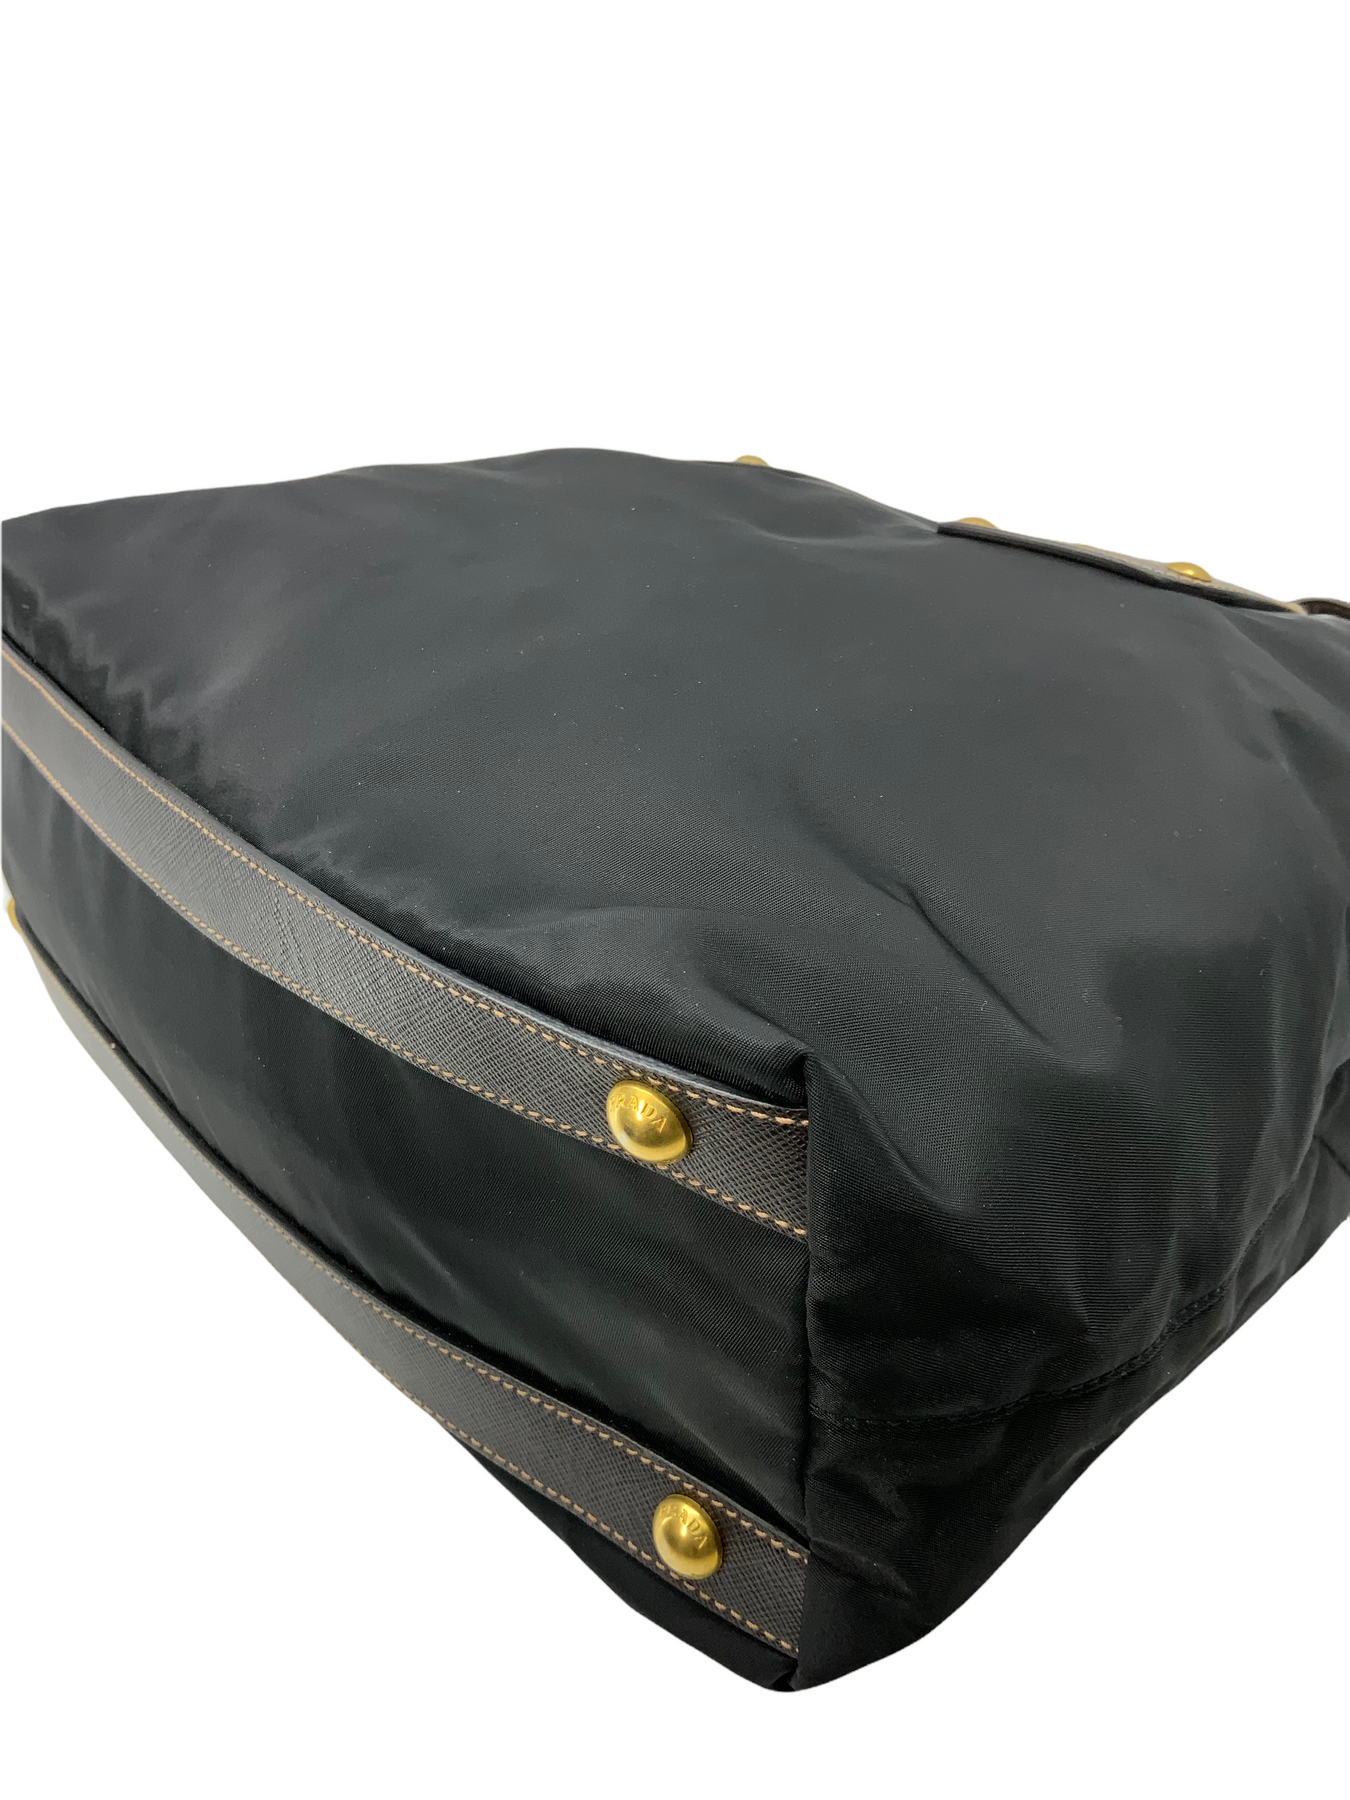 Prada Saffiano Leather Trim Tessuto Briefcase